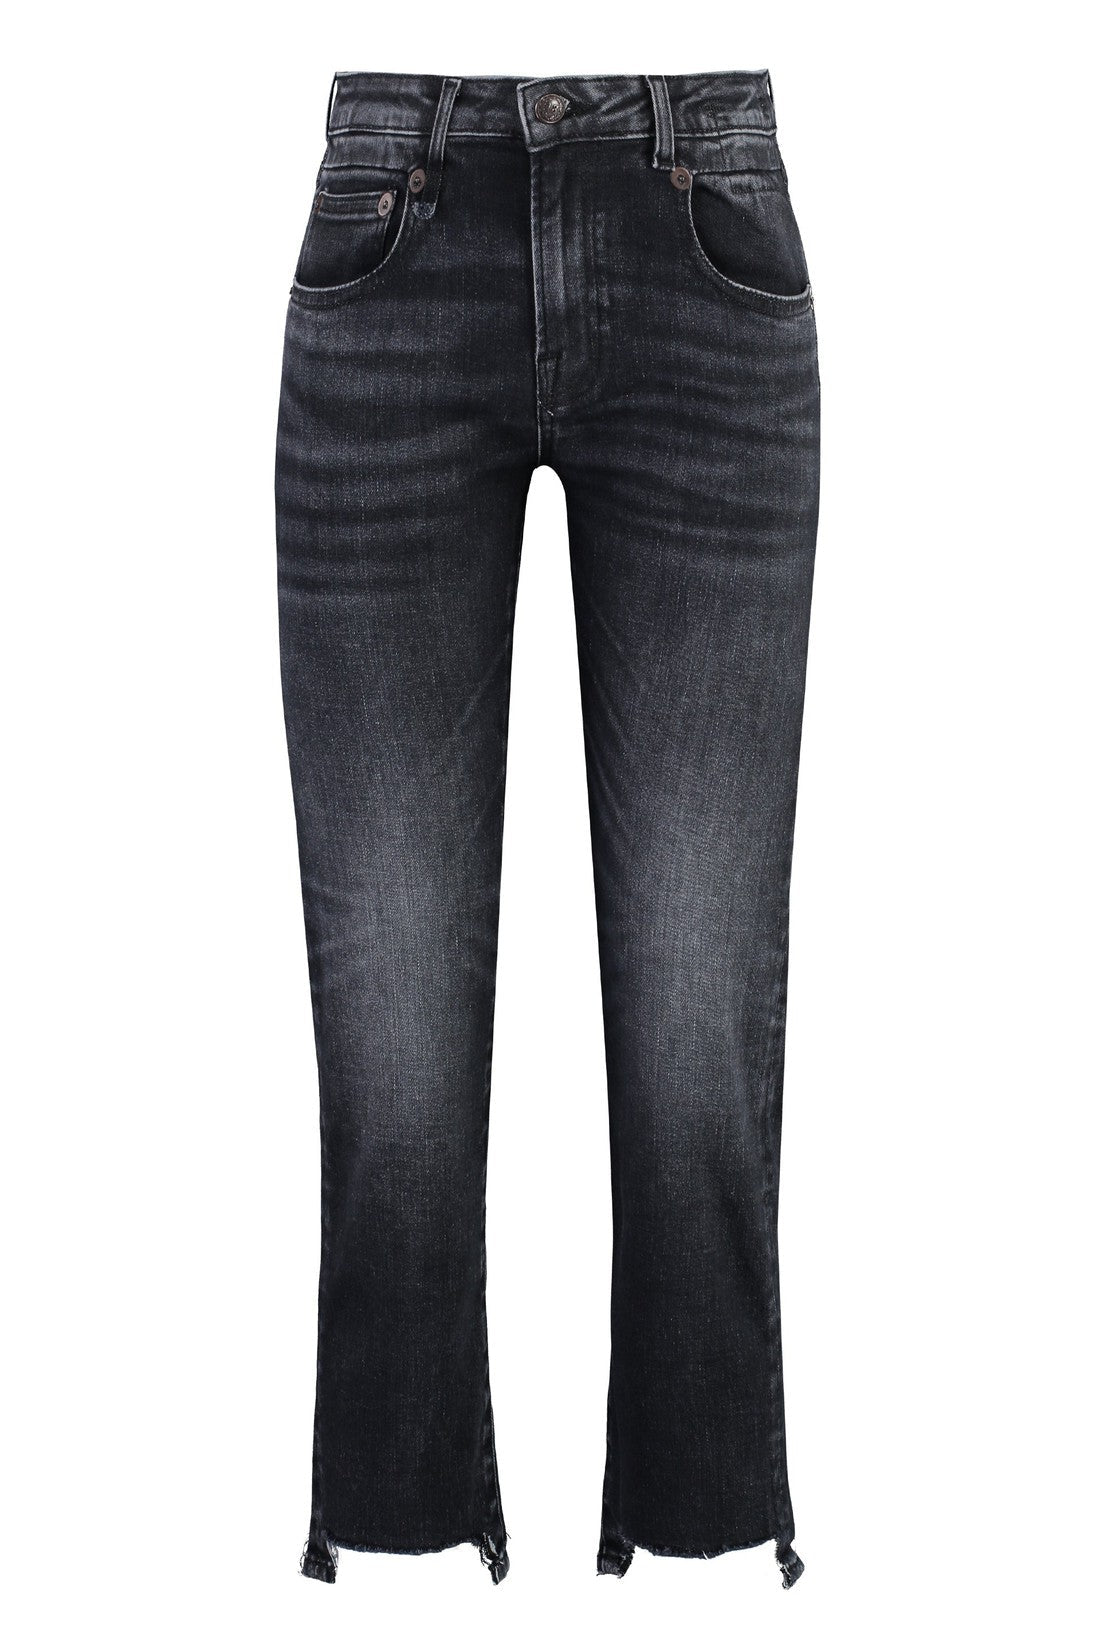 R13-OUTLET-SALE-5-pocket straight-leg jeans-ARCHIVIST